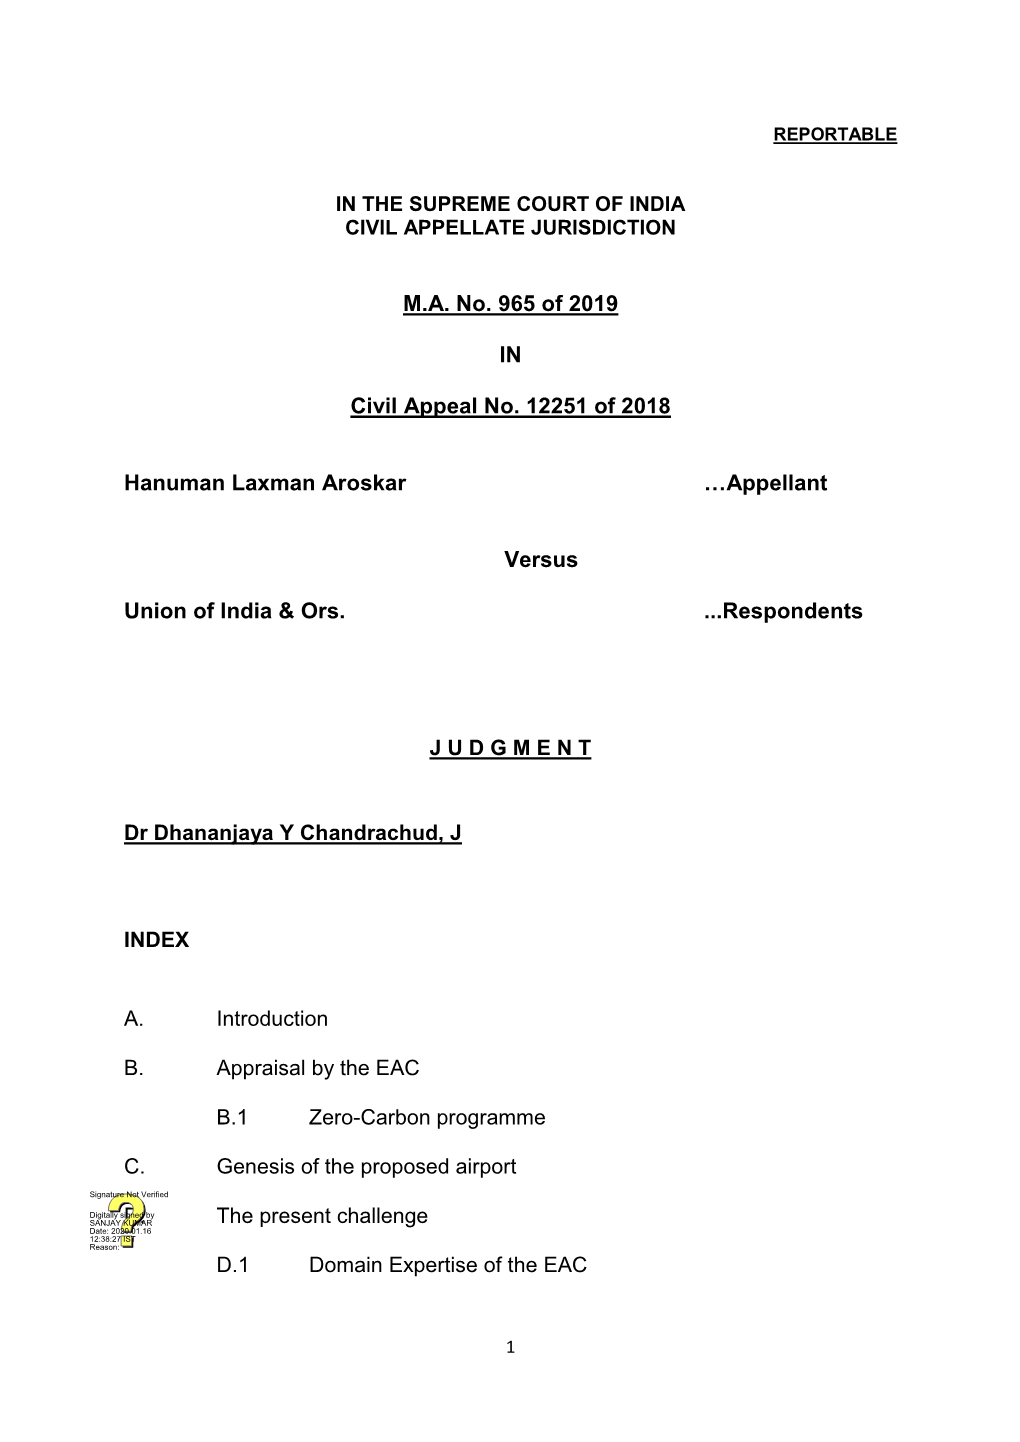 M.A. No. 965 of 2019 in Civil Appeal No. 12251 of 2018 Hanuman